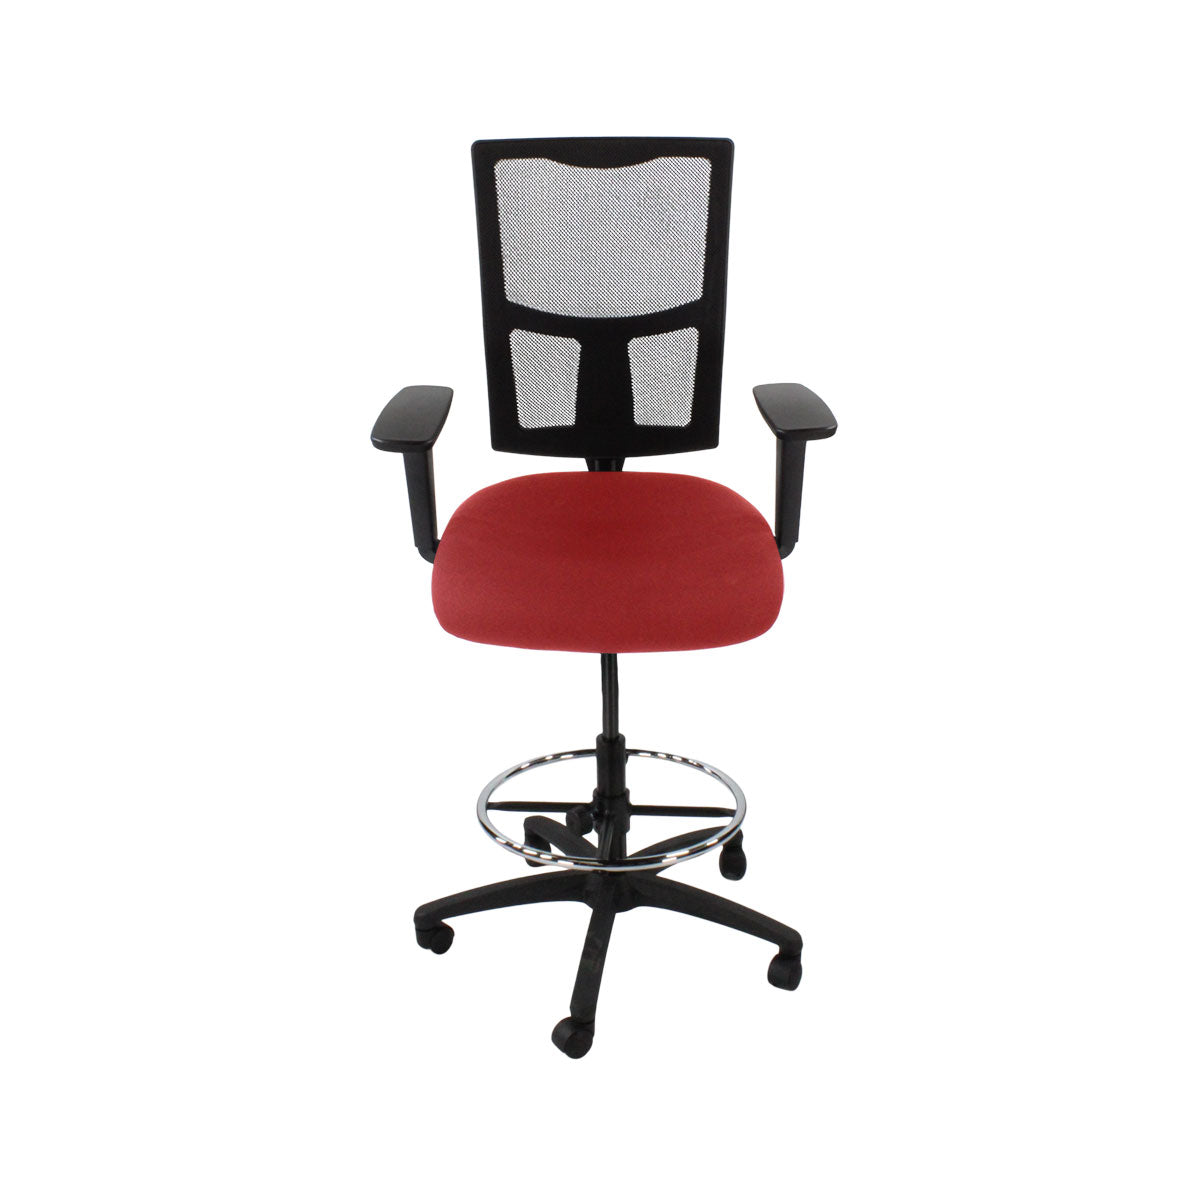 Inhaltsverzeichnis: Ergo 2 Draftsman Chair aus rotem Stoff – generalüberholt